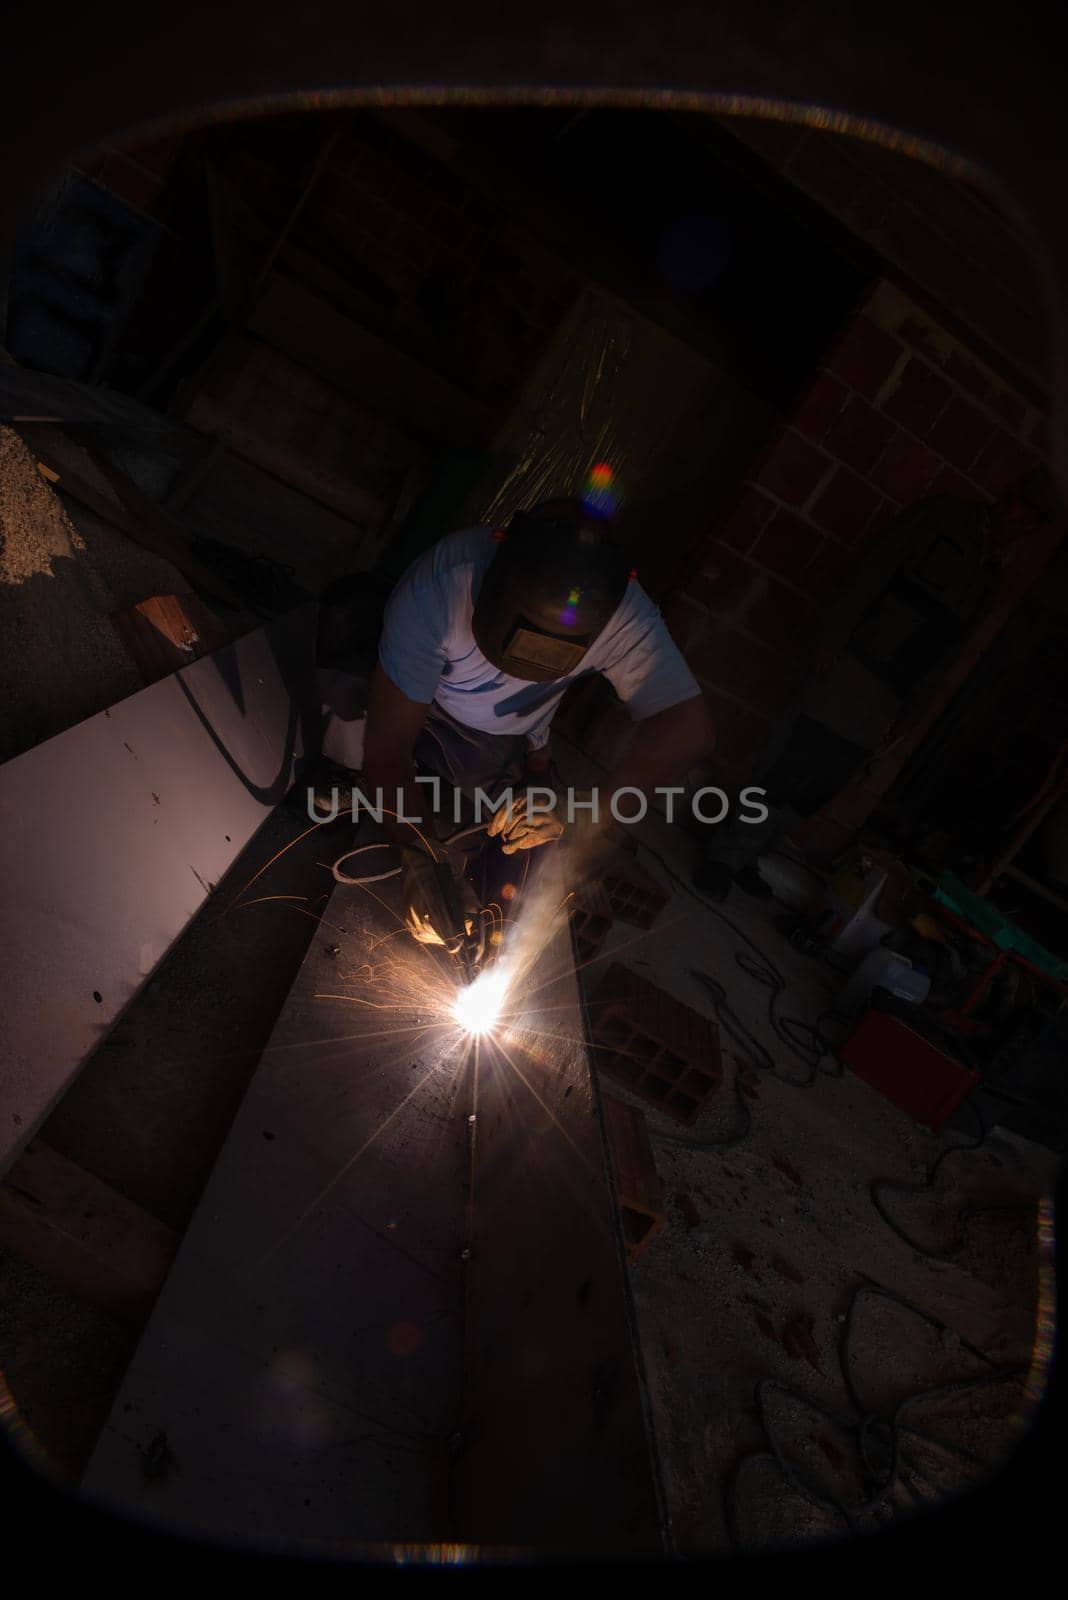 welder with protective mask welding steel by dotshock